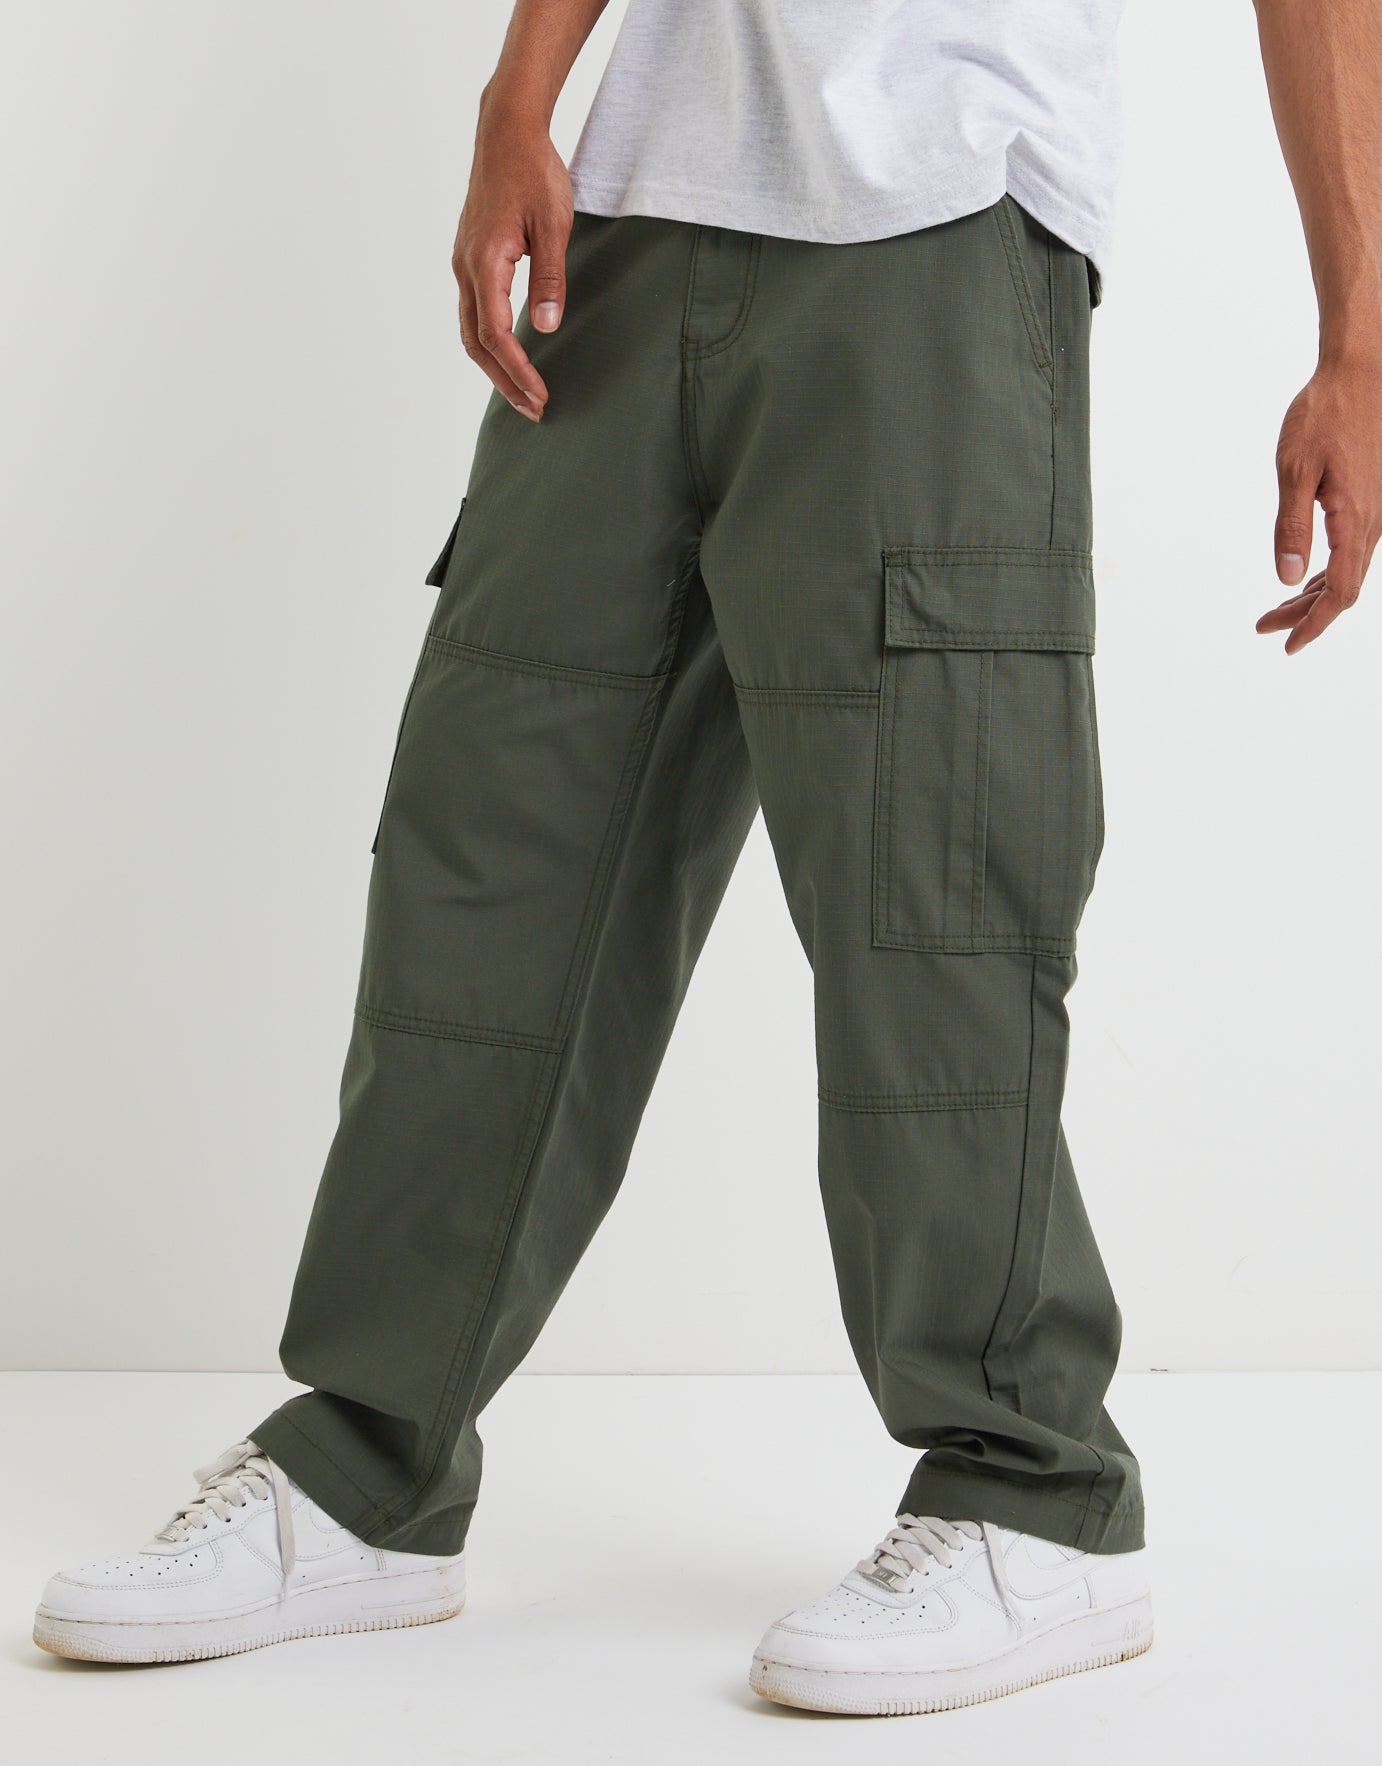 Tactical Baggy Cargo Pants In Green | Hallensteins Nz